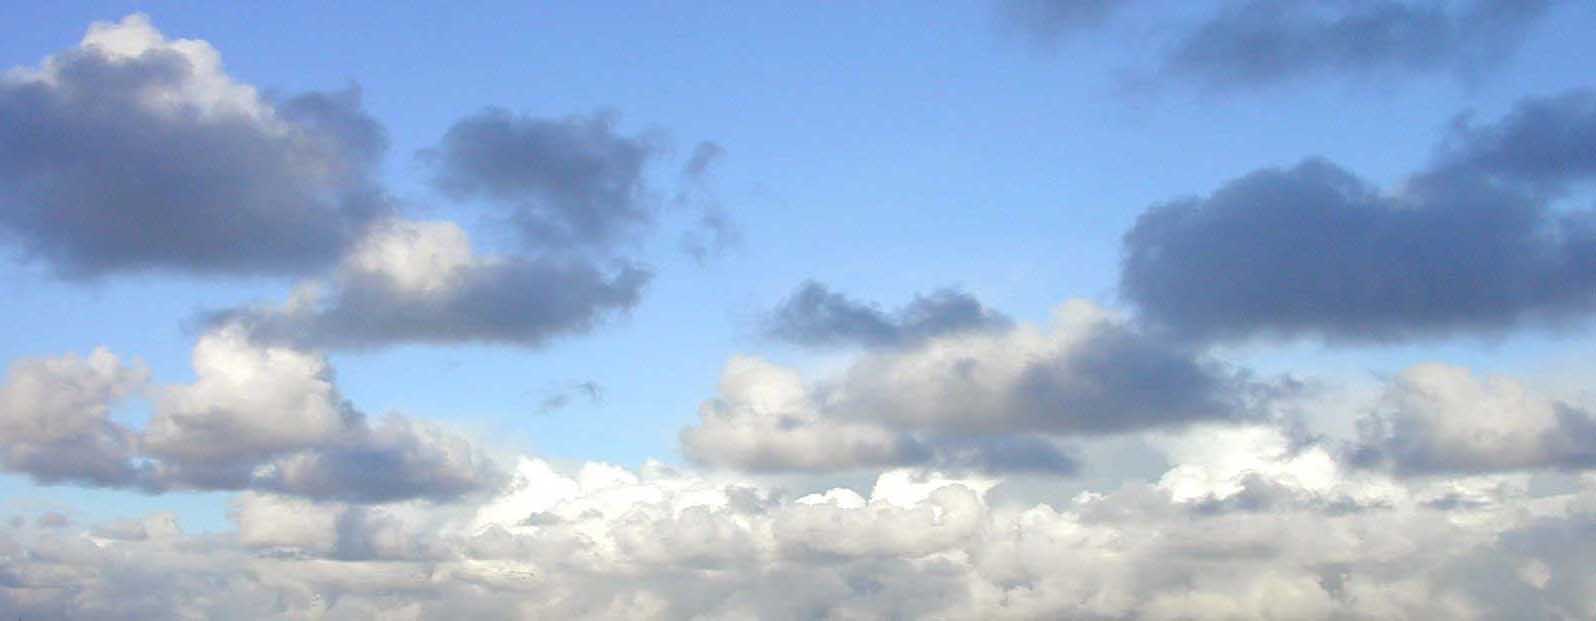 nuvole.jpg